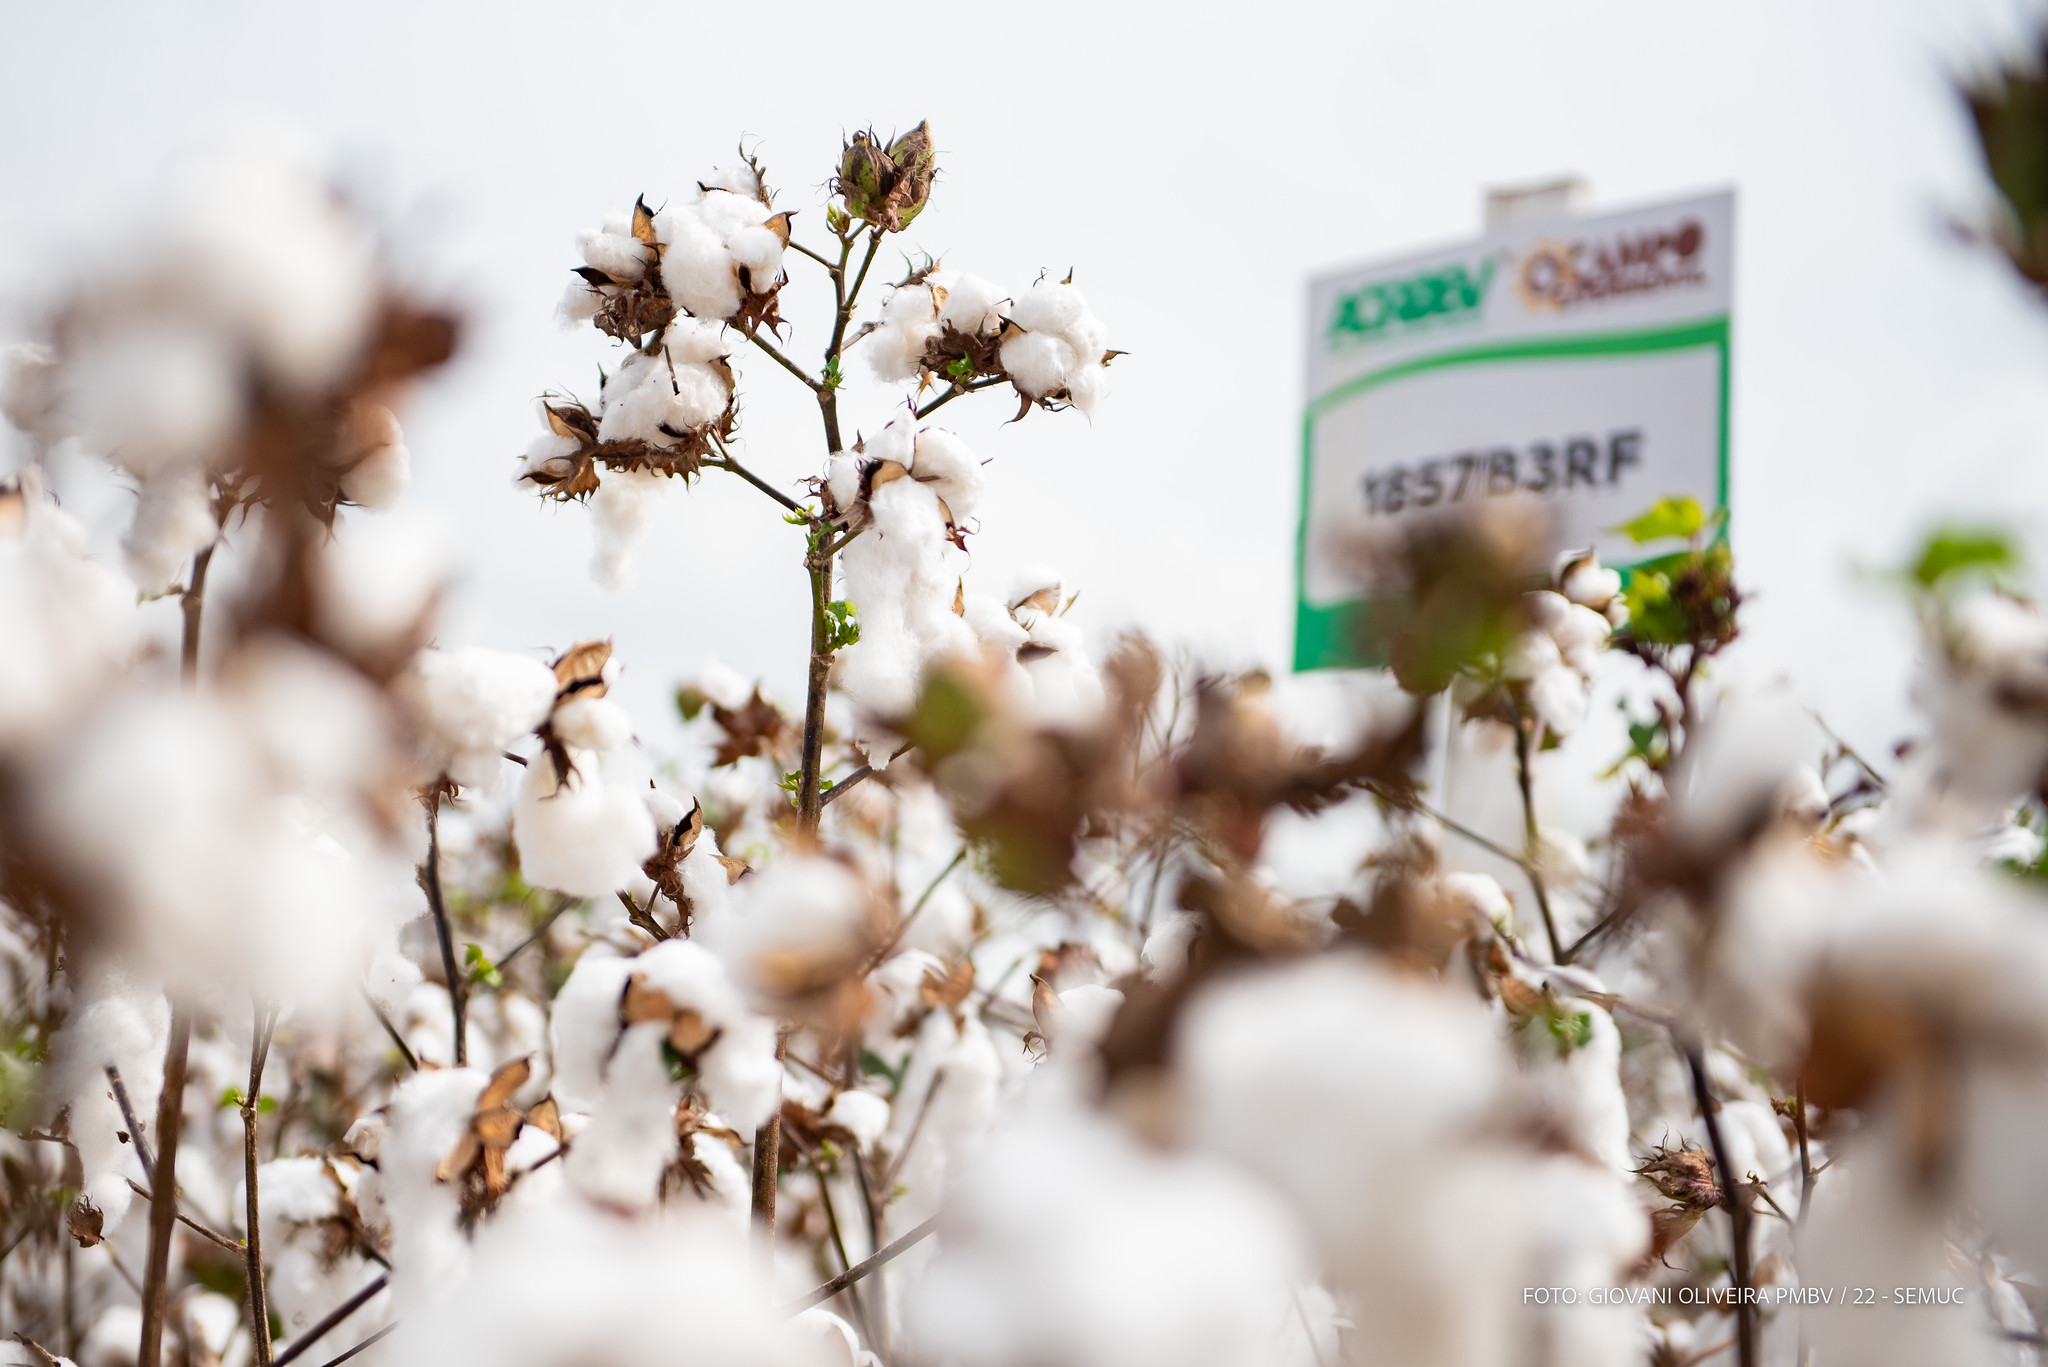 Campo Experimental da Prefeitura de Boa Vista faz primeira colheita de amostras de algodão